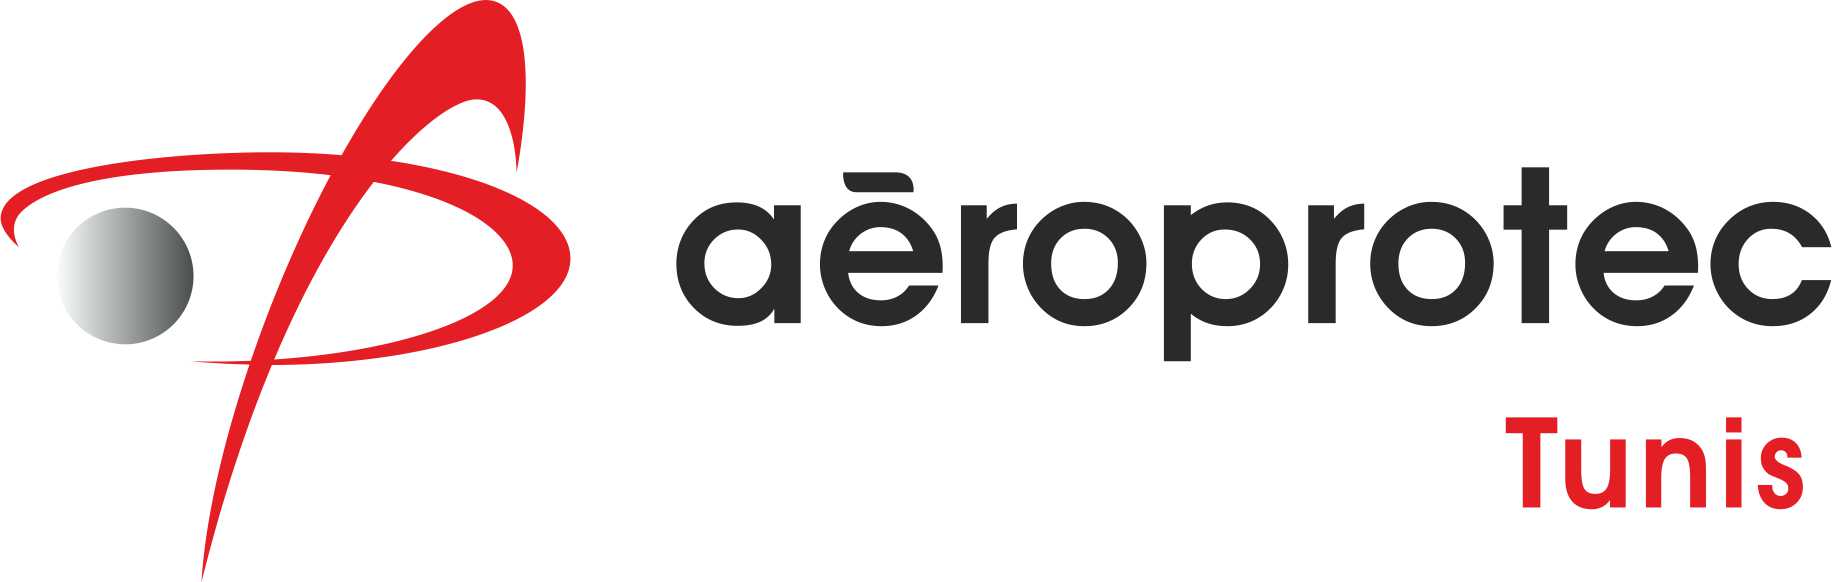 Aeroprotec Tunis